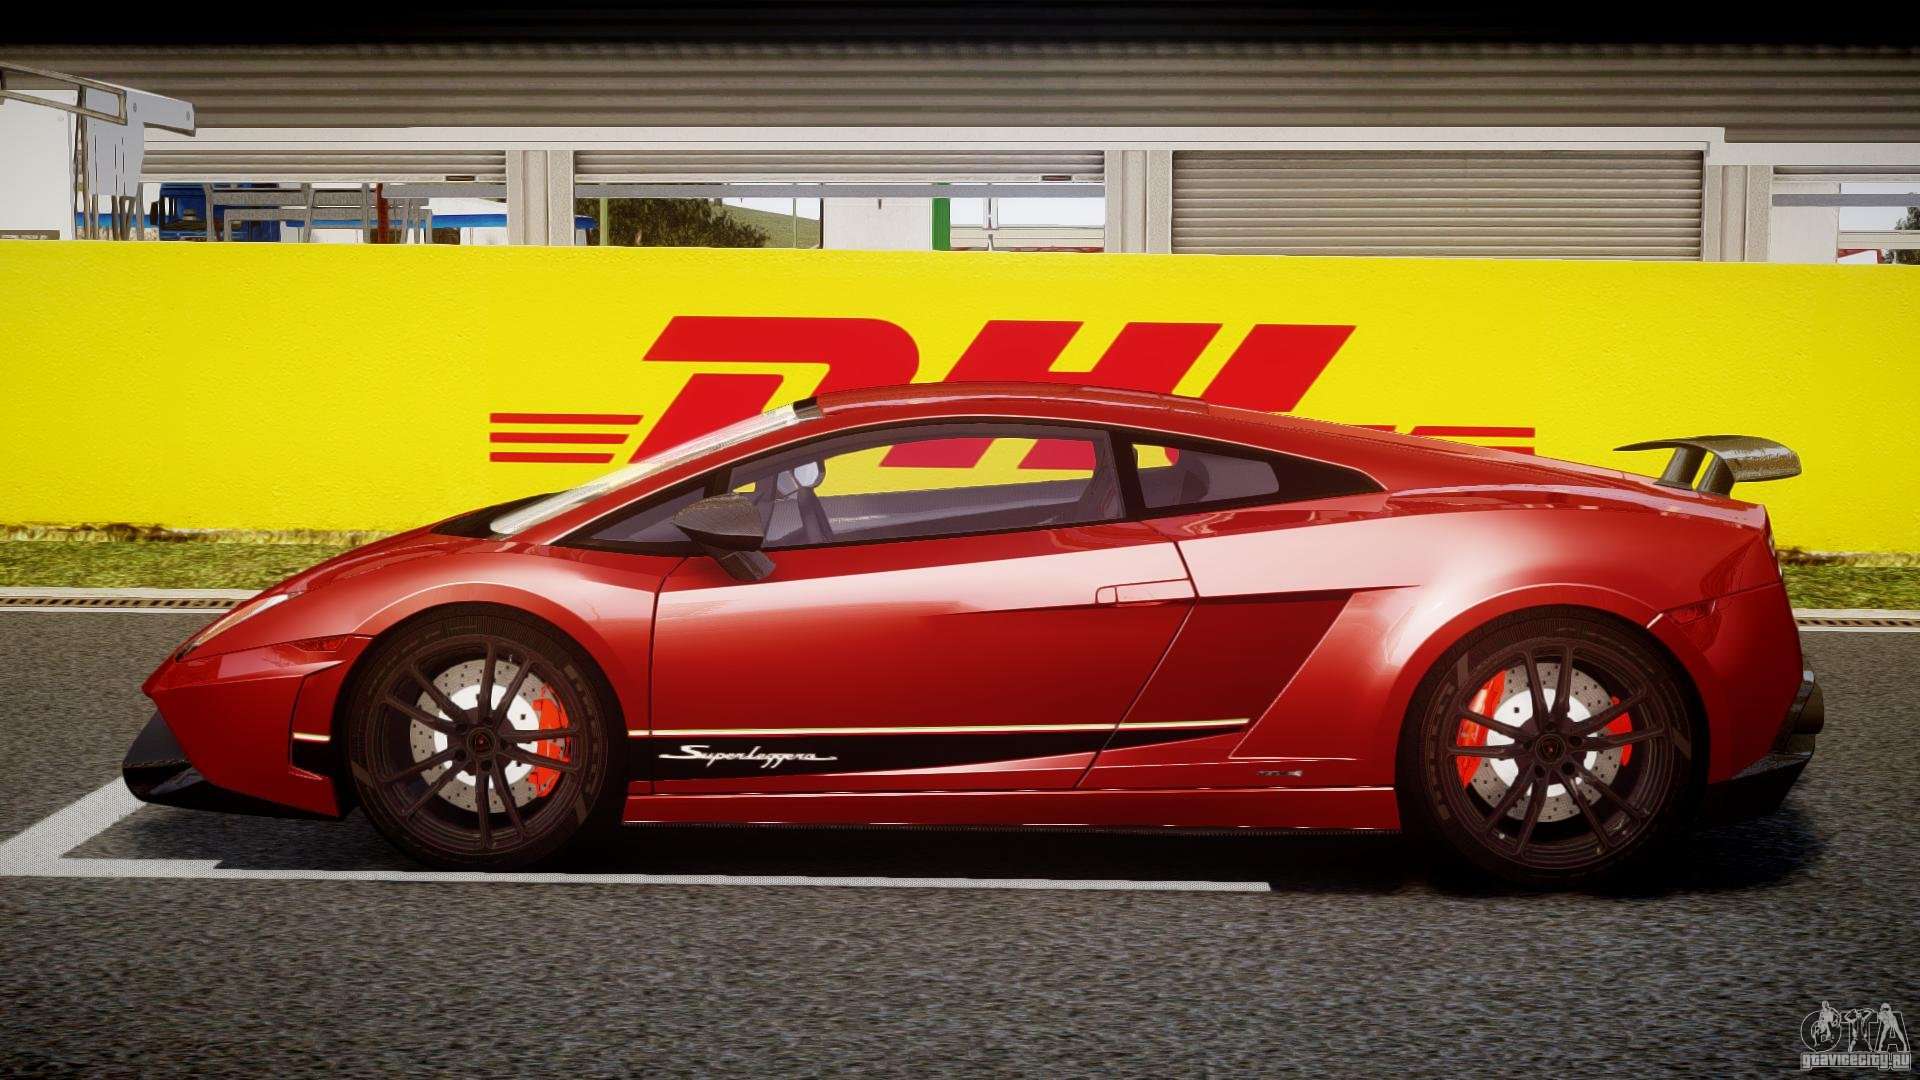 Lamborghini Gallardo LP570-4 Superleggera 2011 for GTA 4